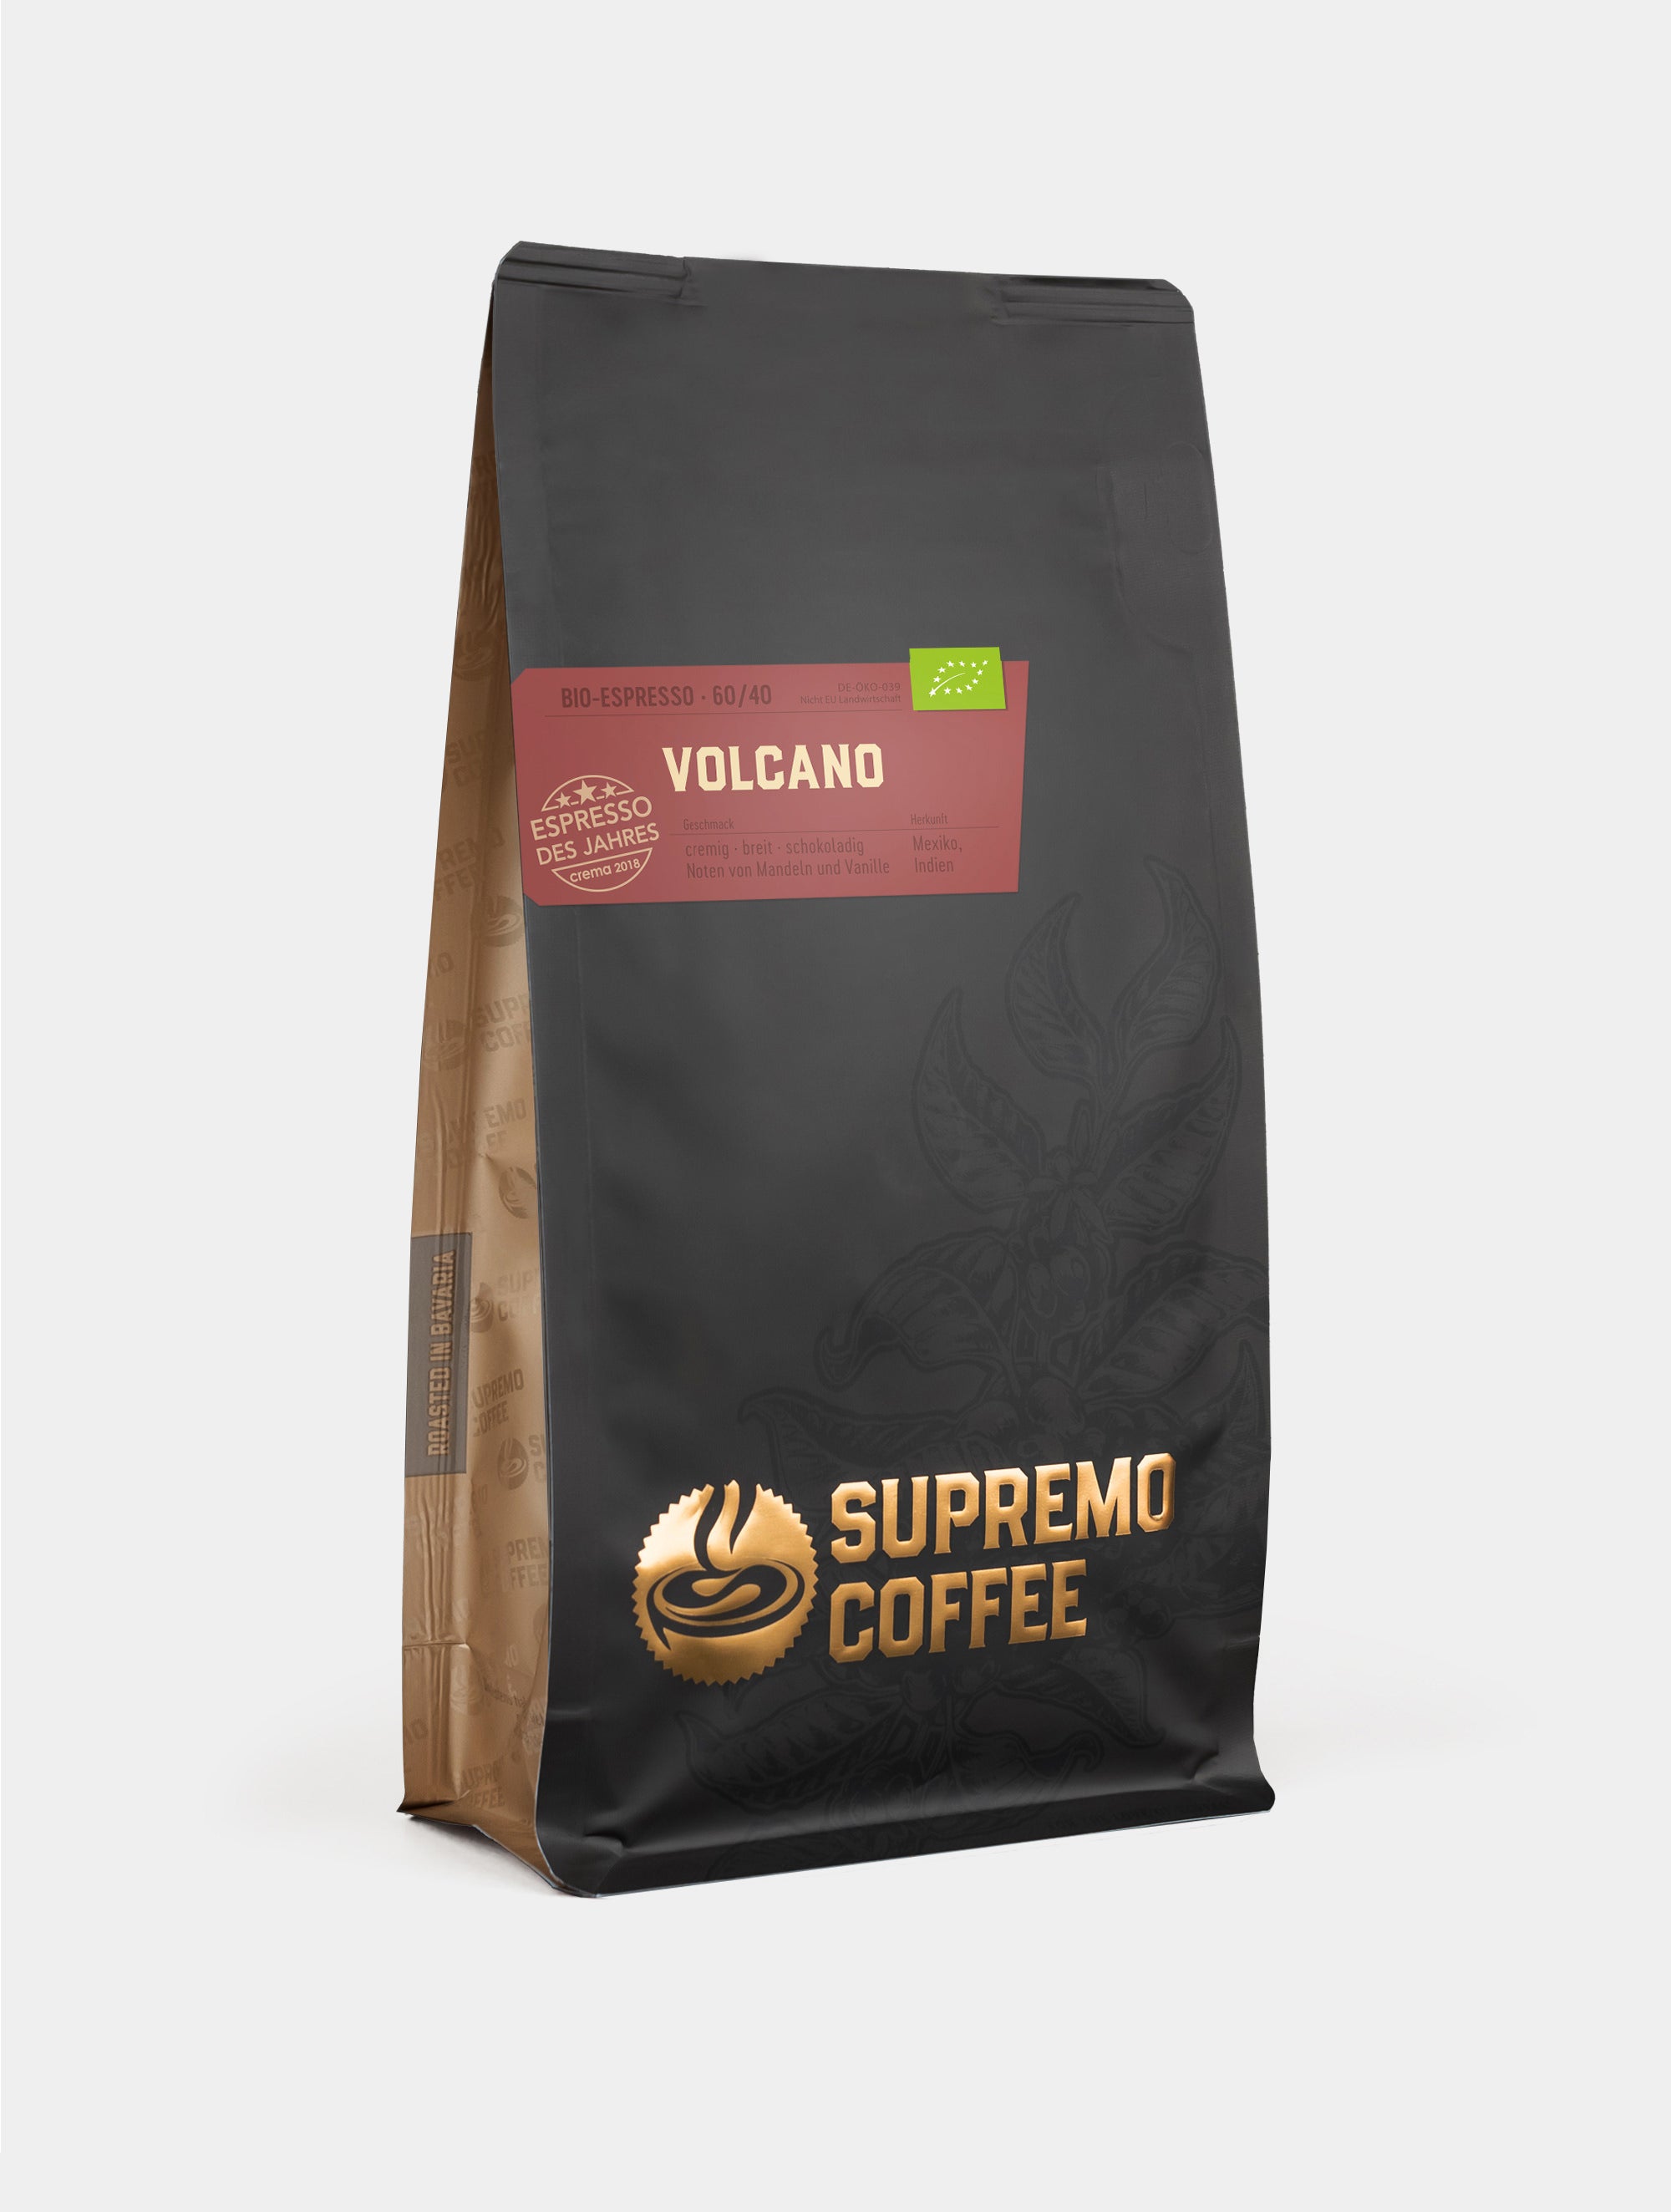 Volcano, Bio-Espresso 60/40 | SUPREMO Coffee